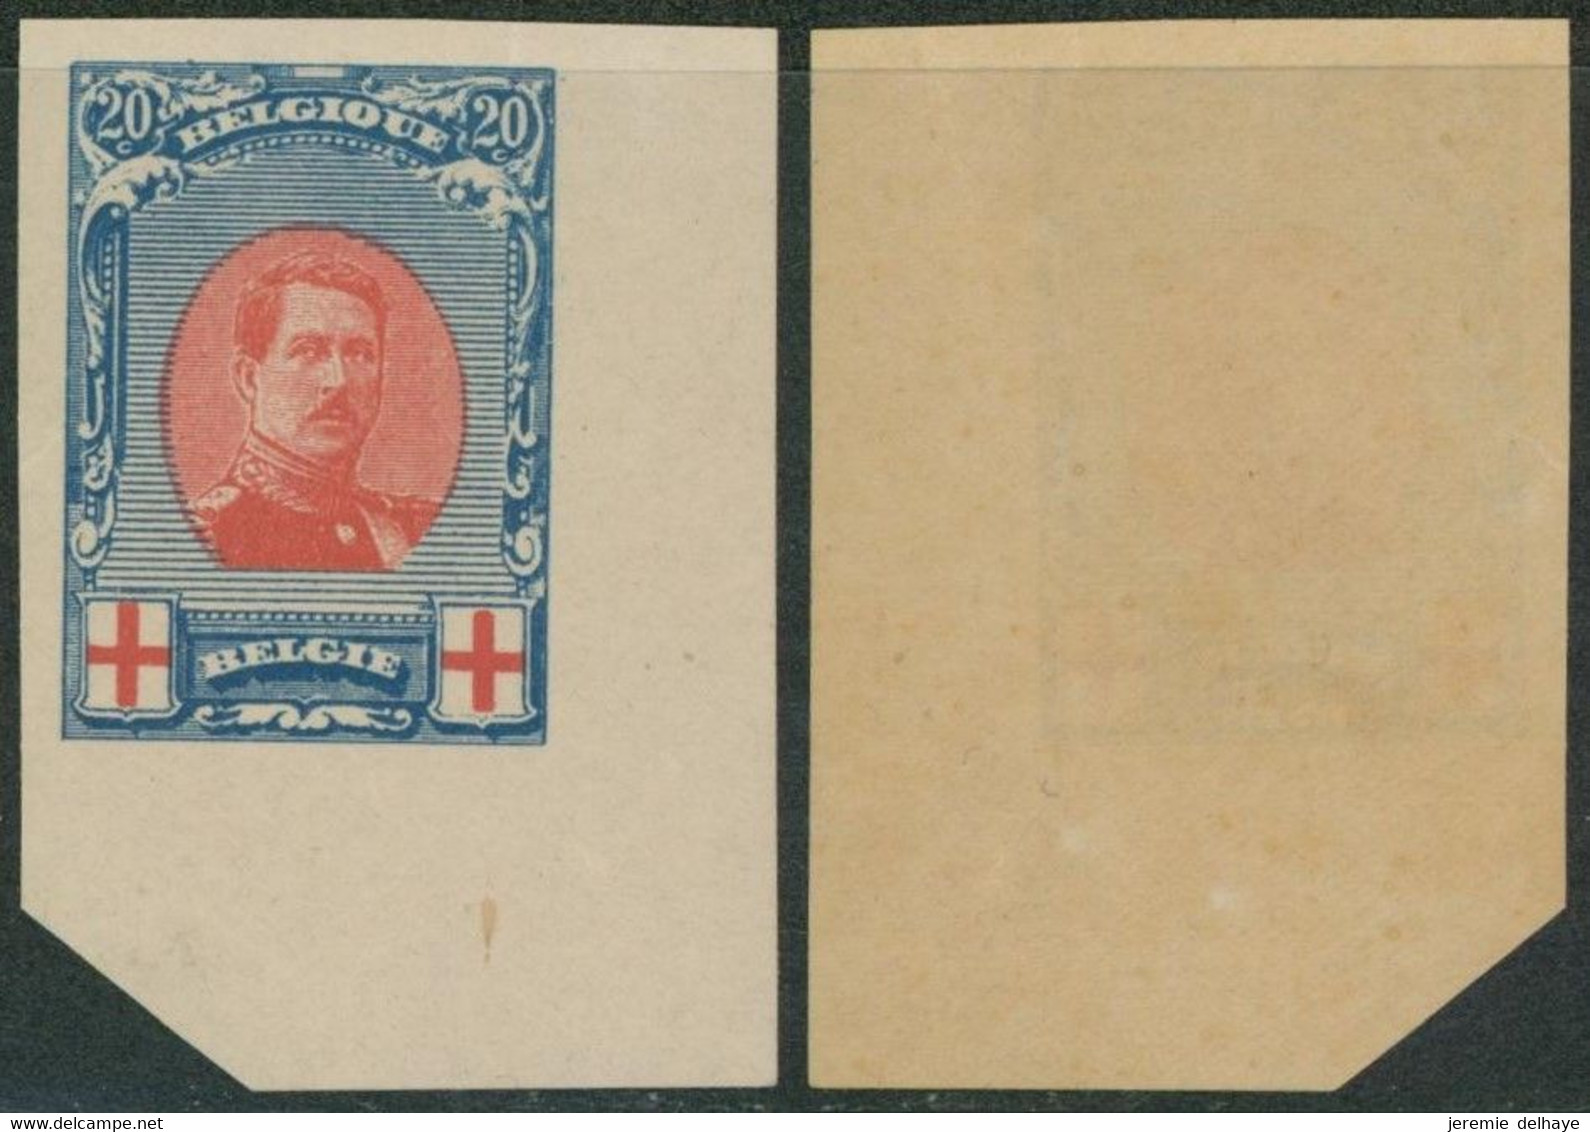 Essai - Croix-rouge : épreuve De La Planche (Type I, Non Adopté) 20C Bleu Foncé, Coin De Feuille / STES 2824 - Proofs & Reprints